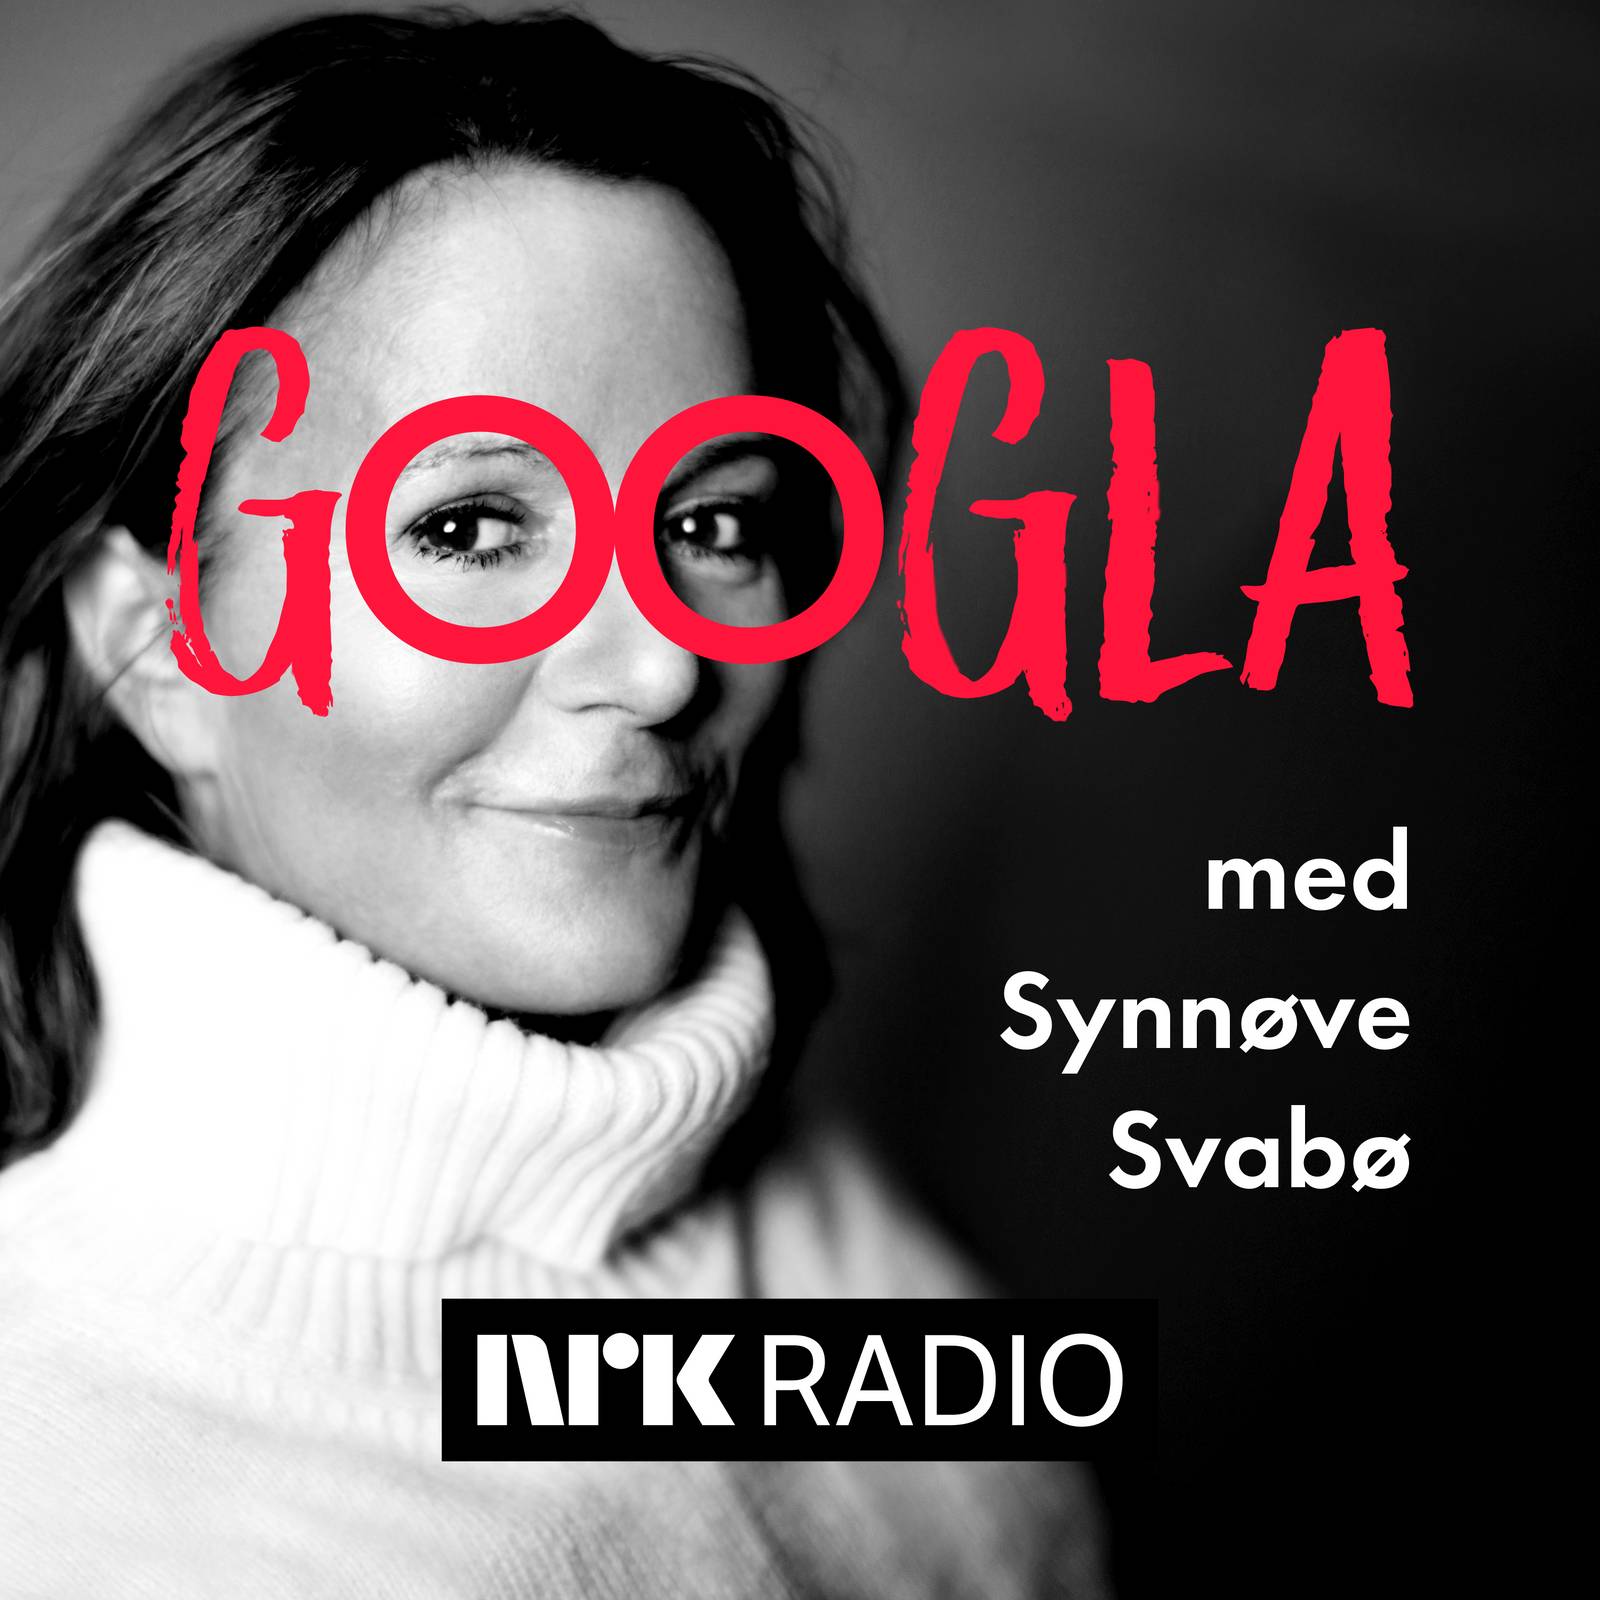 Googla med Synnøve Svabø